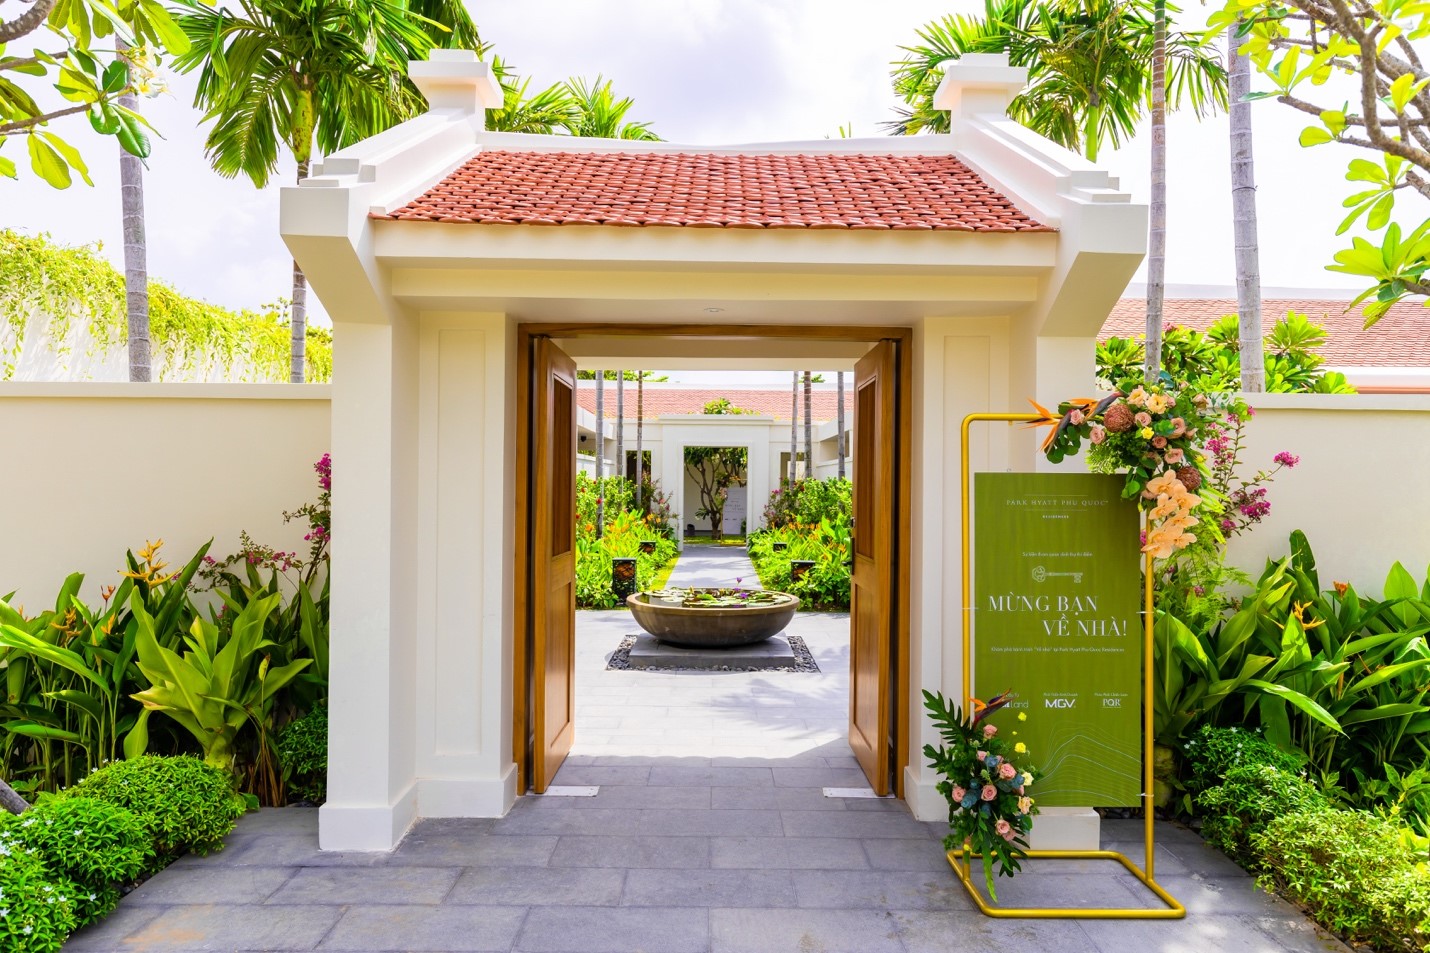 Park Hyatt Phu Quoc Residences: Mừng bạn về nhà! - Ảnh 3.